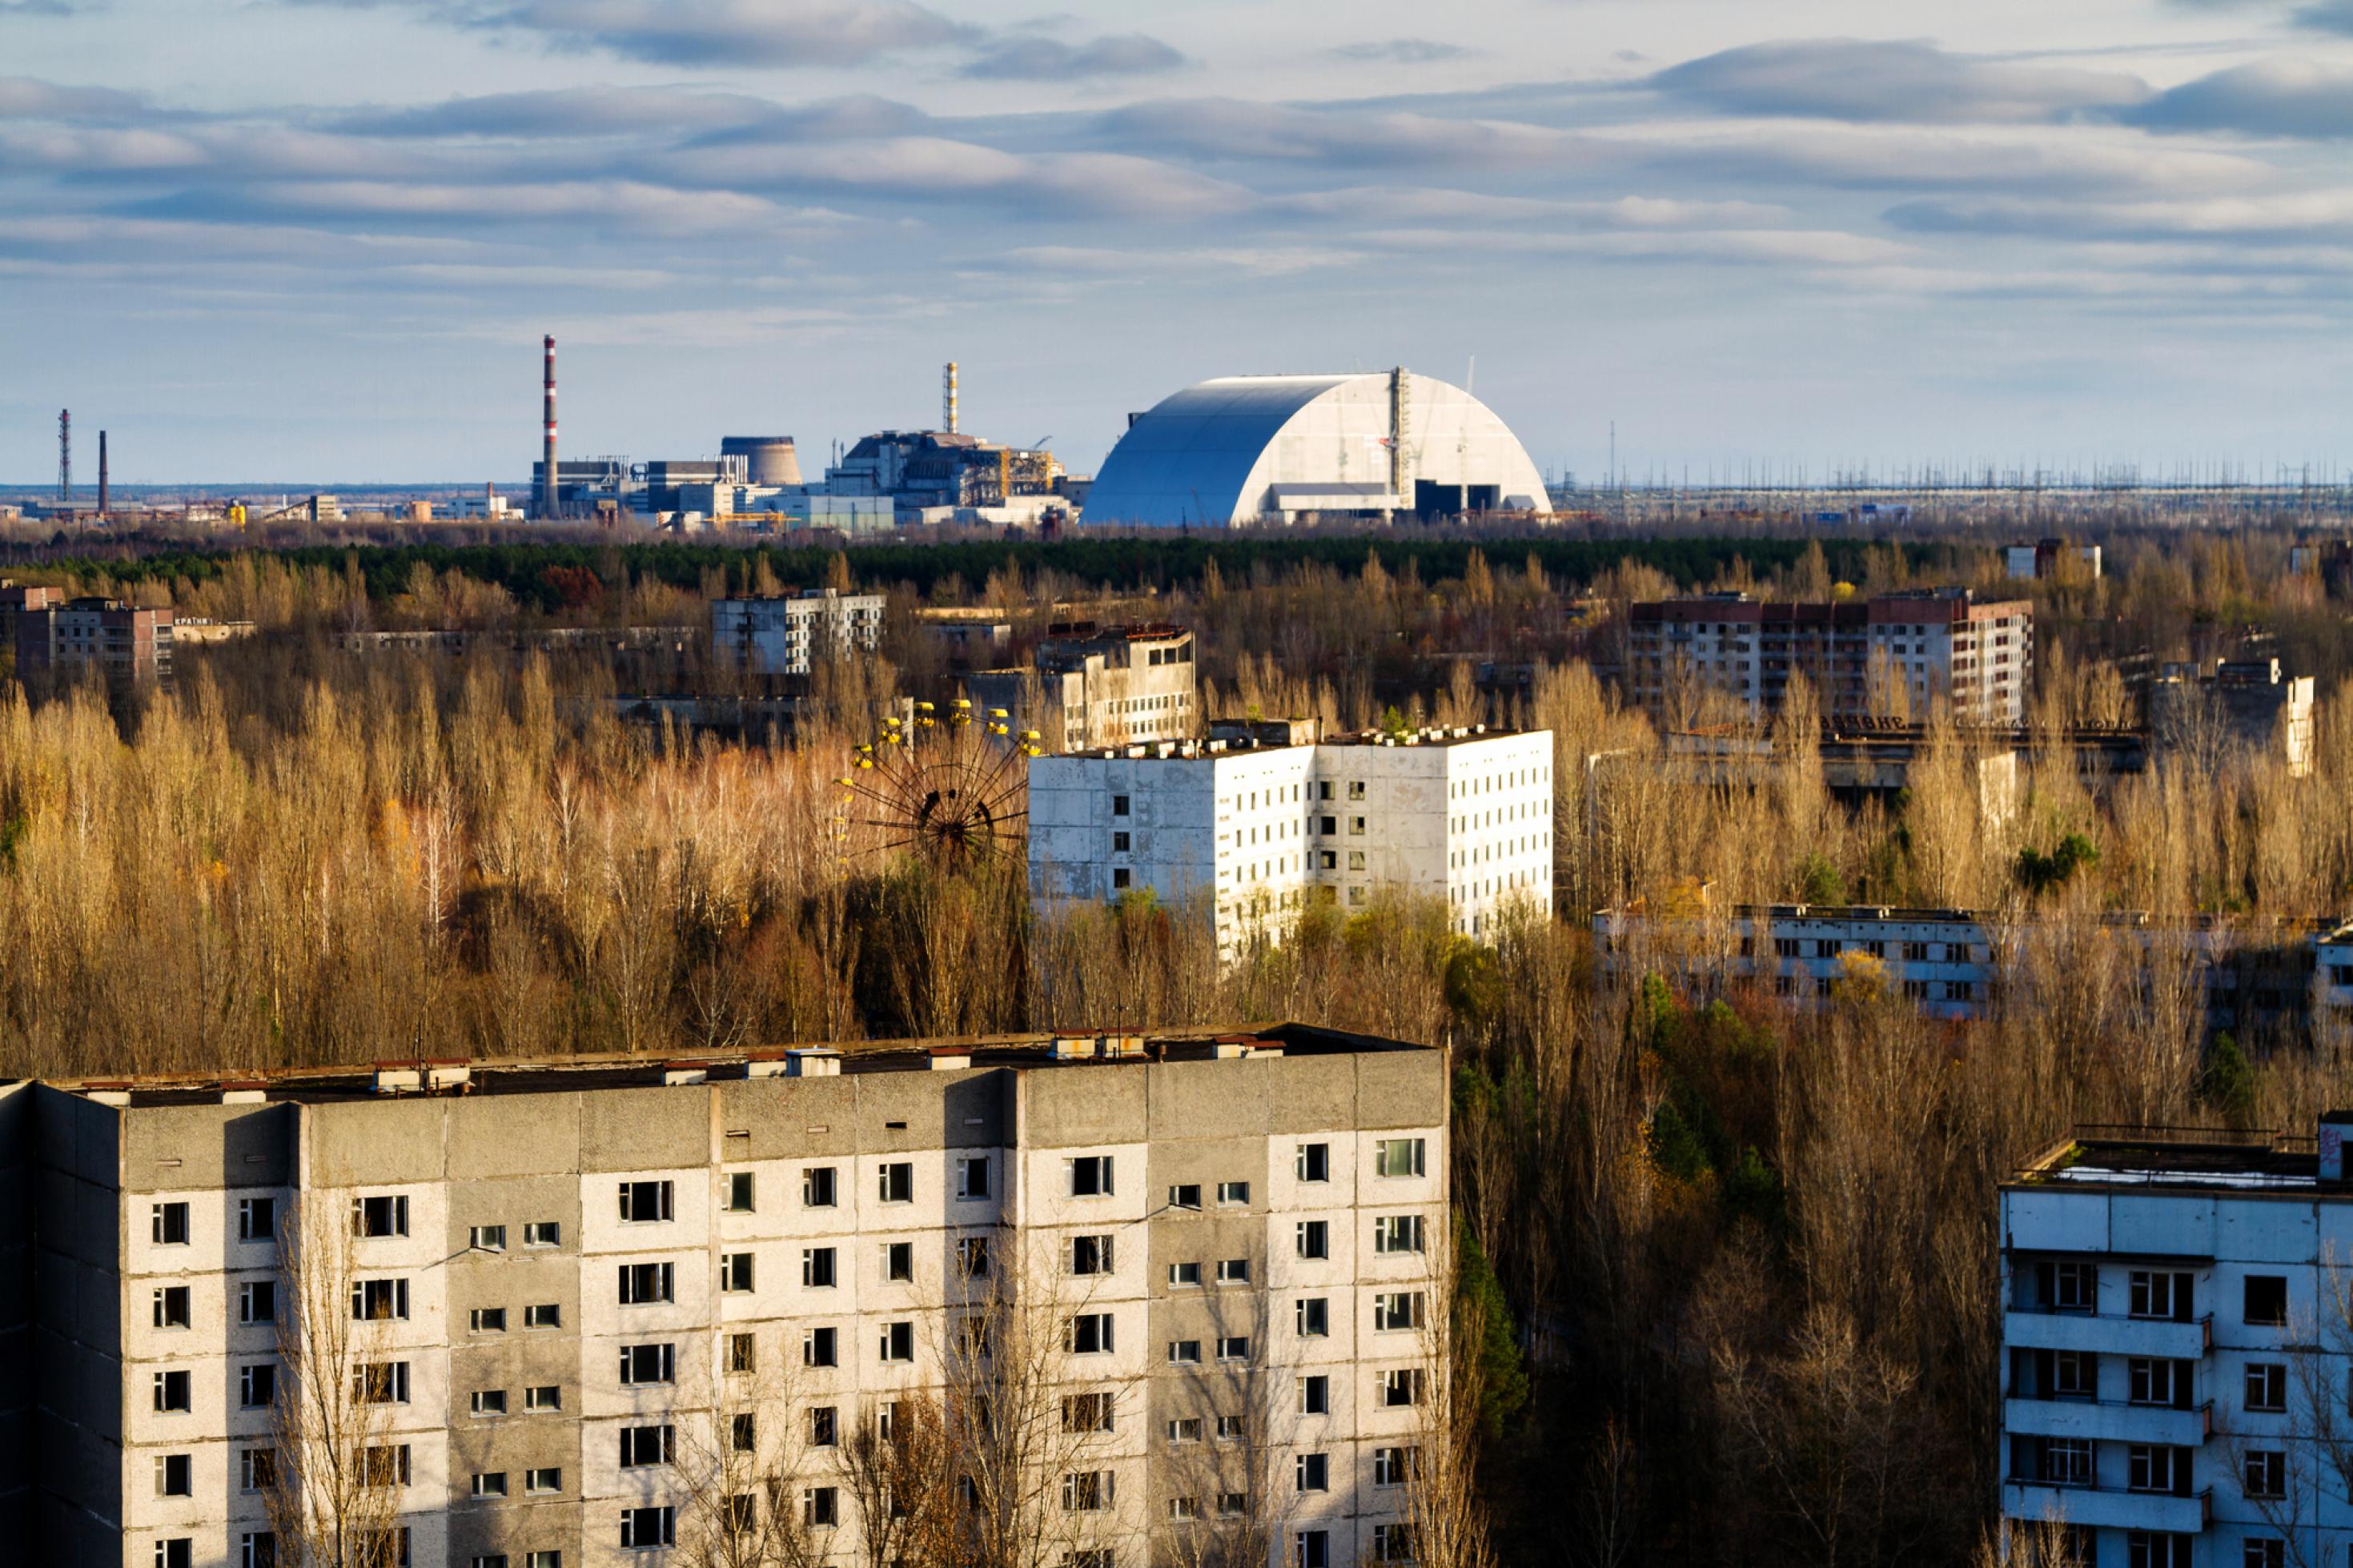 Blick von hoher Warte auf das Nukleargelände, im Vordergrund leerstehende Hochhäuser, dann ein Riesenrad in einem Wald, dann der Sarkophag mit dem explodierten Reaktor, dahinter Wolken